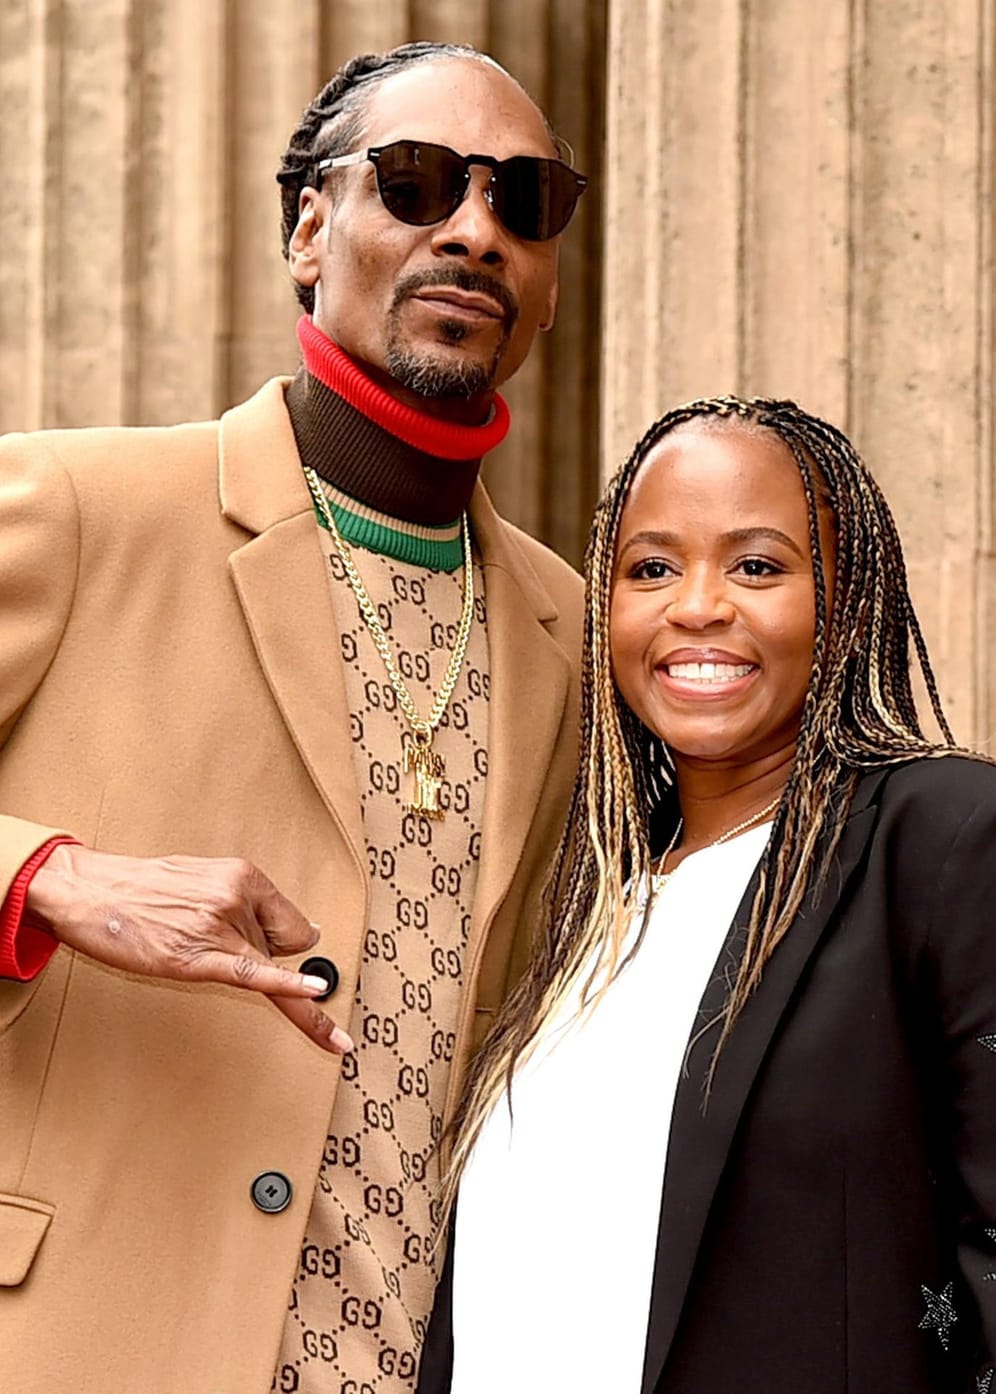 Snoop Dogg und Shante Broadus: Der Rapper heiratete seine Jugendliebe 1997. 7 Jahre später folgte die Scheidung wegen "unüberbrückbarer Differenzen". 2008 rauften sich die Zwei wieder zusammen, heirateten erneut und sind bis heute glücklich miteinander.